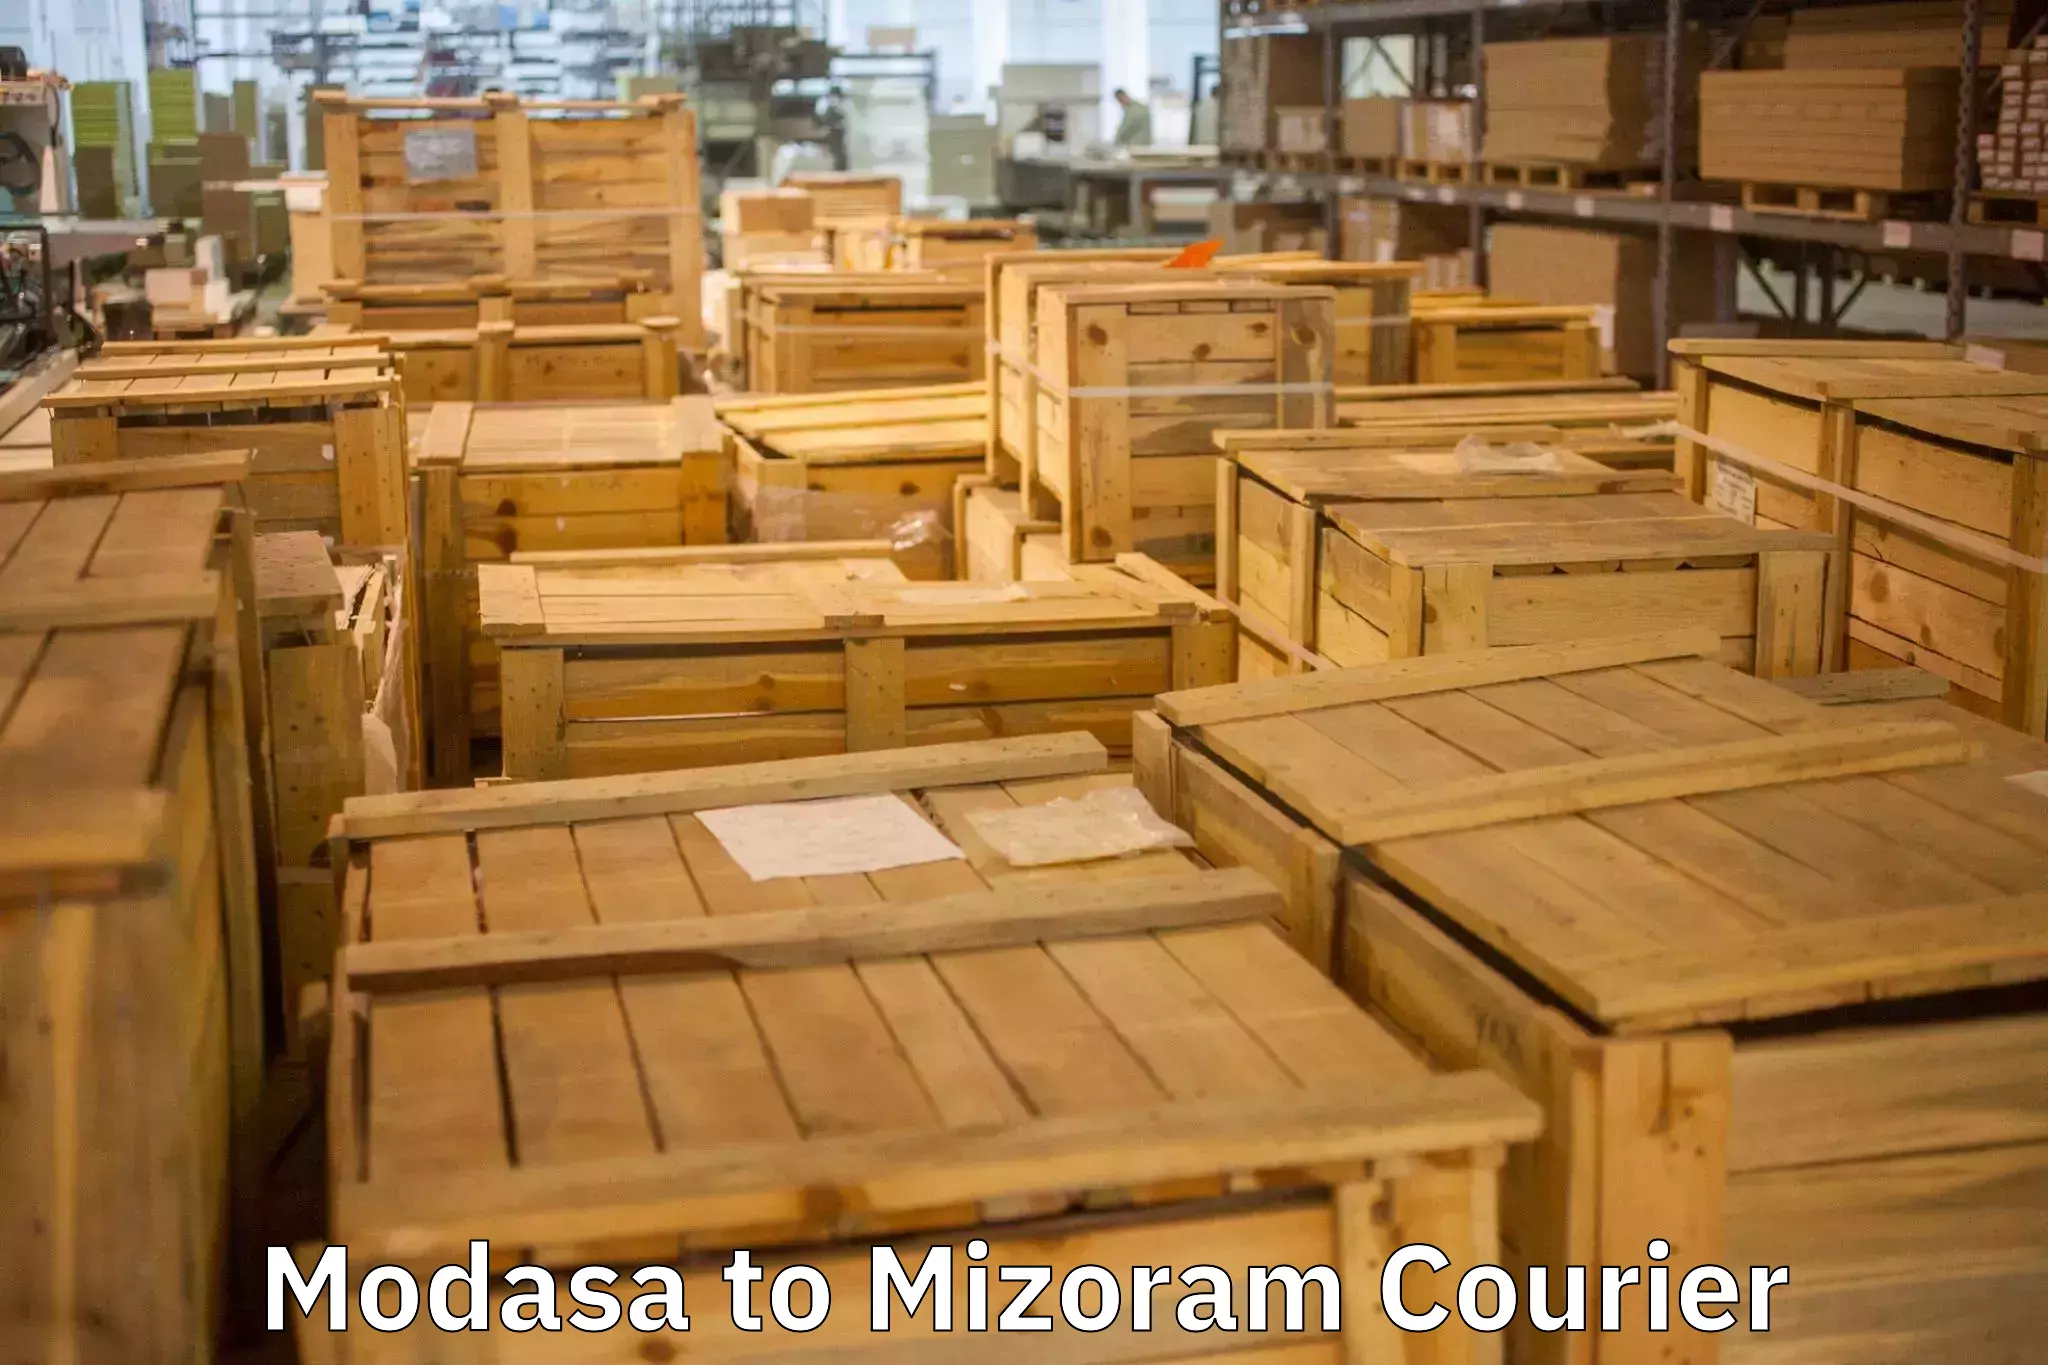 Furniture moving and handling in Modasa to Mizoram